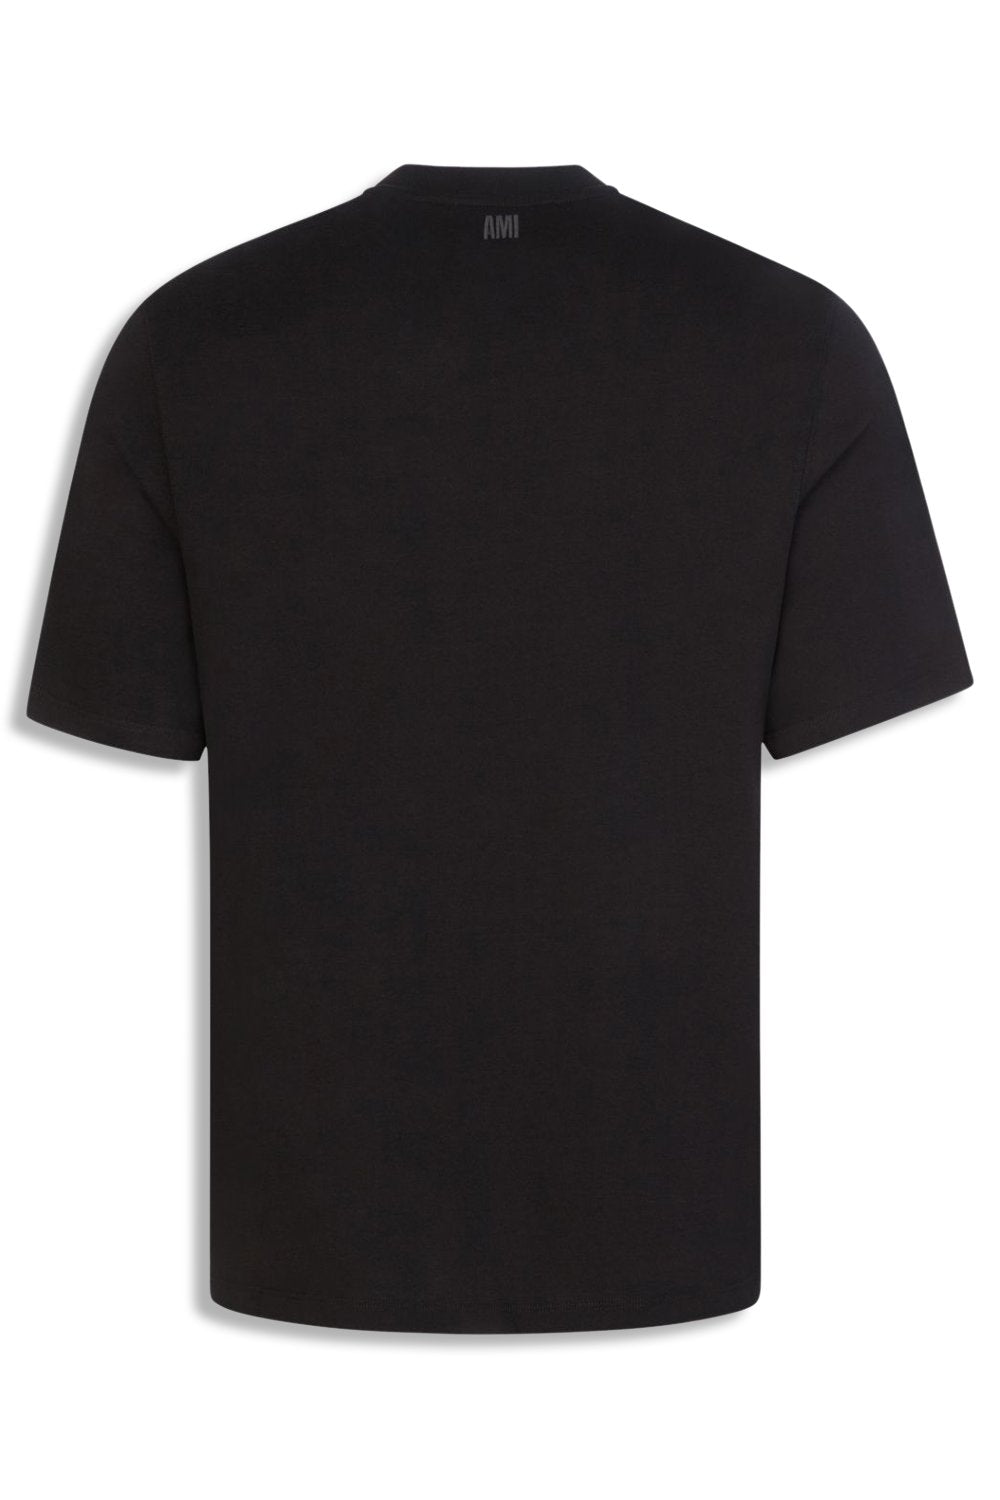 Men's Black Ami Paris 'Ami De Coeur' T-Shirt